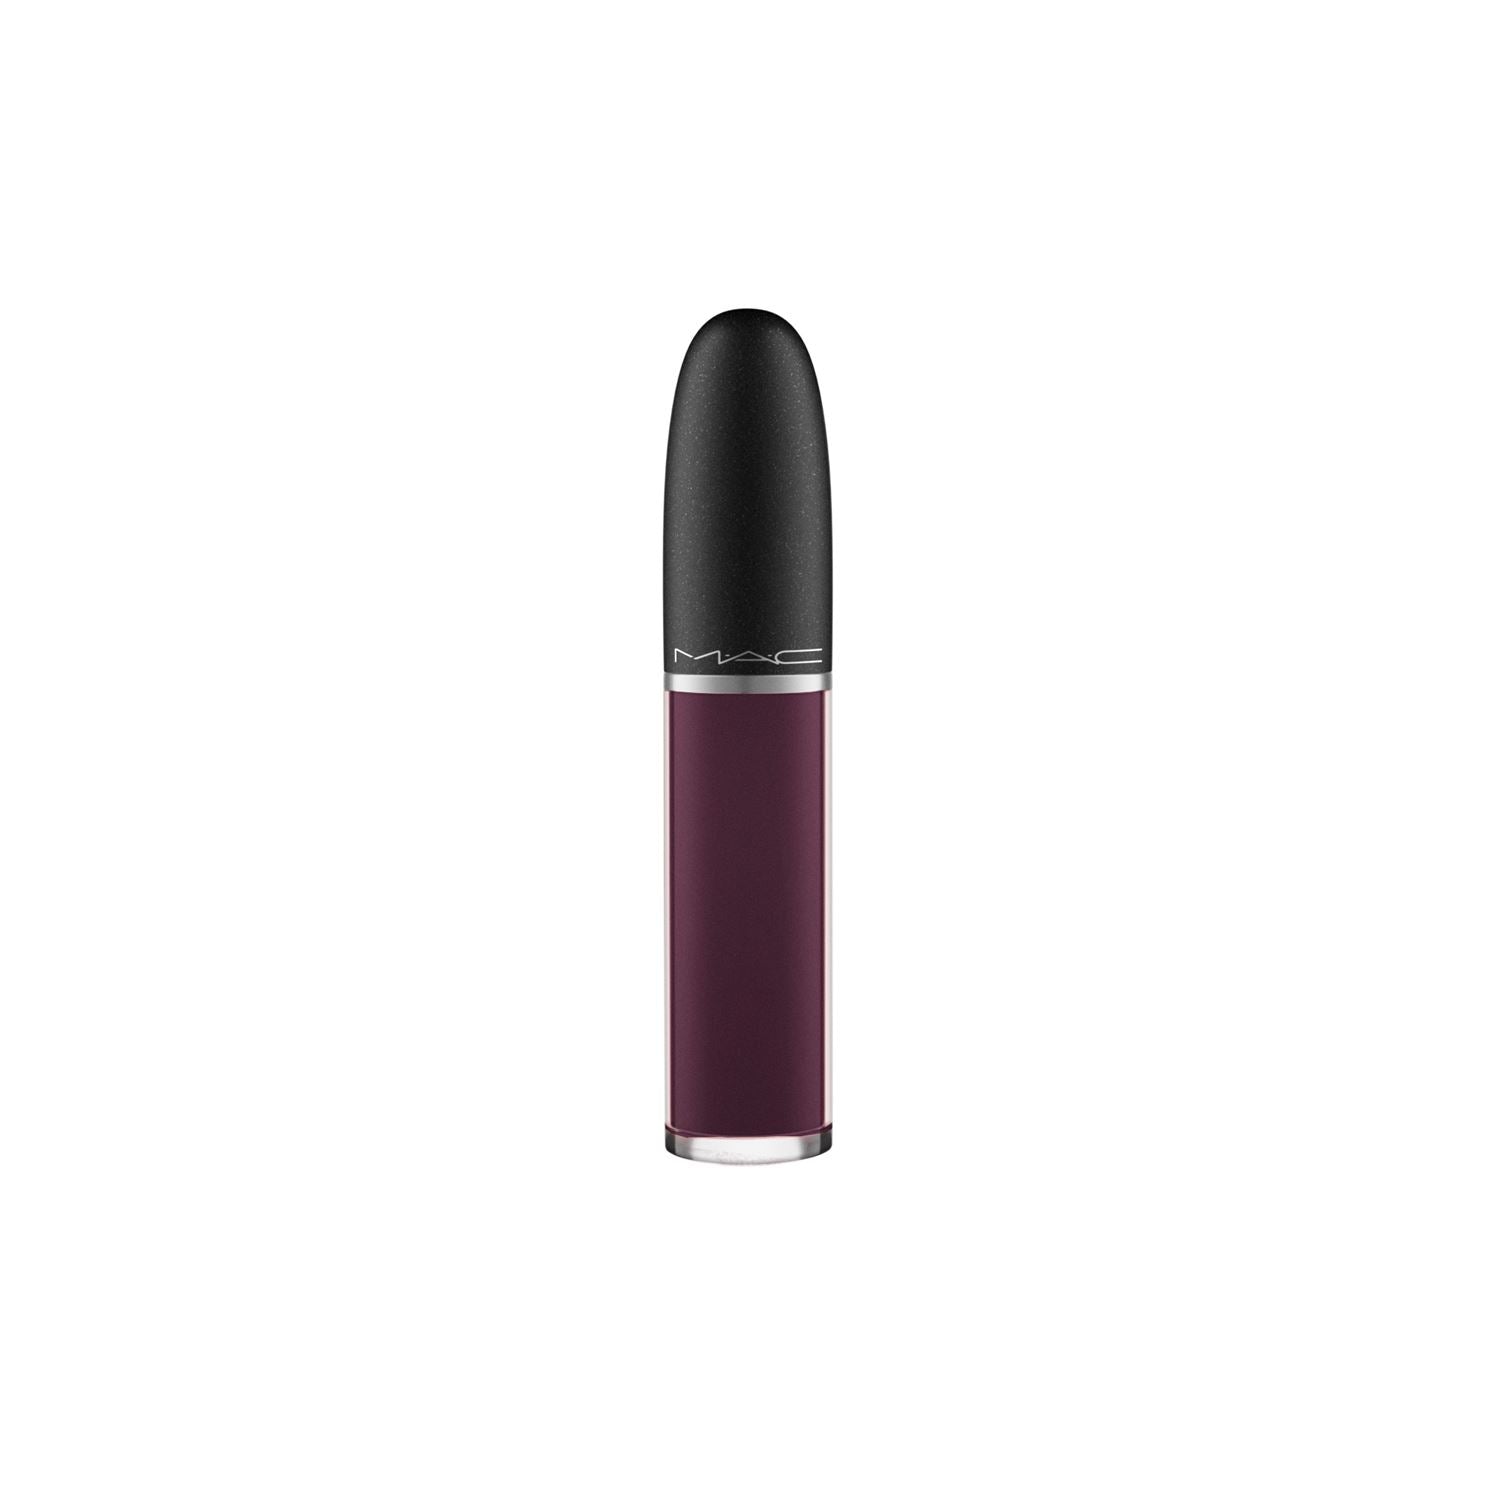 Mac Retro Matte Liquid Lipstick in a great uniform color